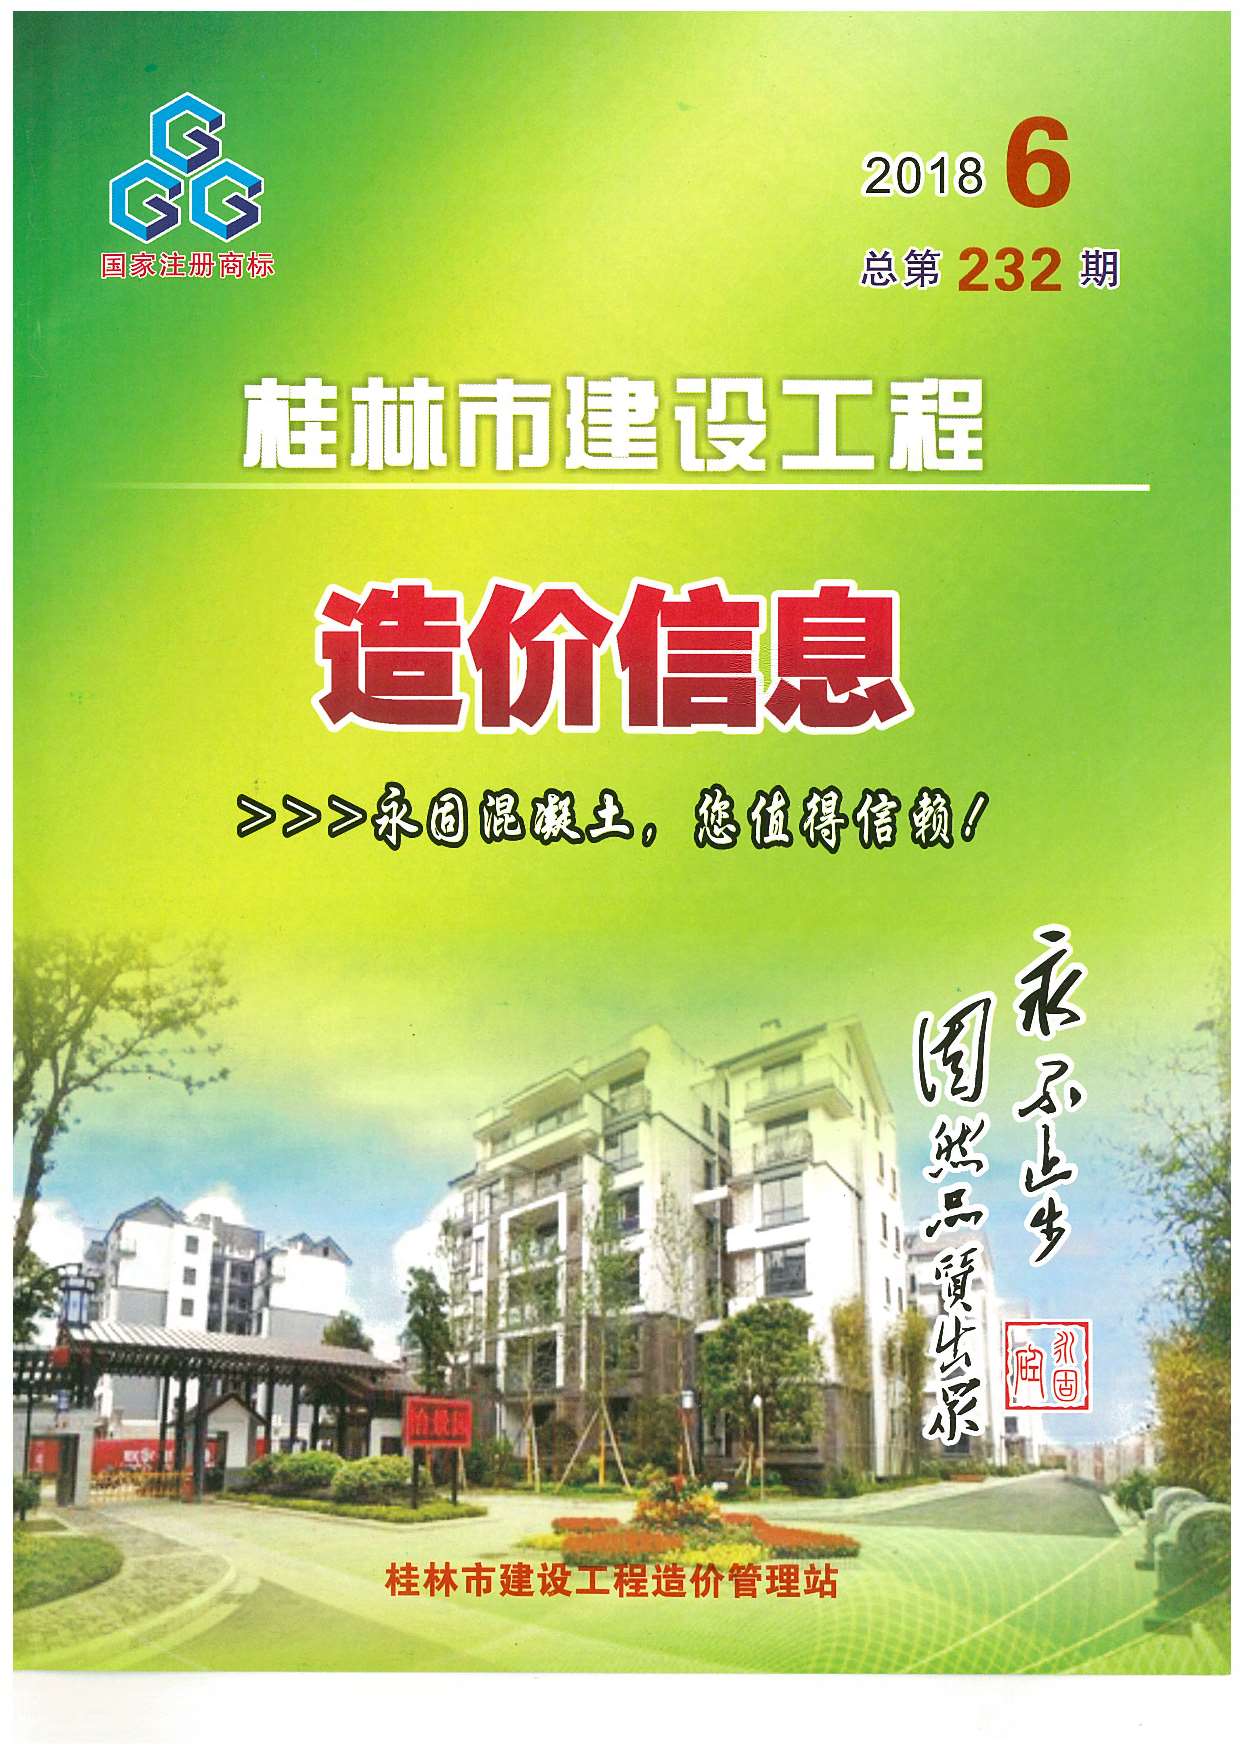 桂林市2018年6月信息价工程信息价_桂林市信息价期刊PDF扫描件电子版